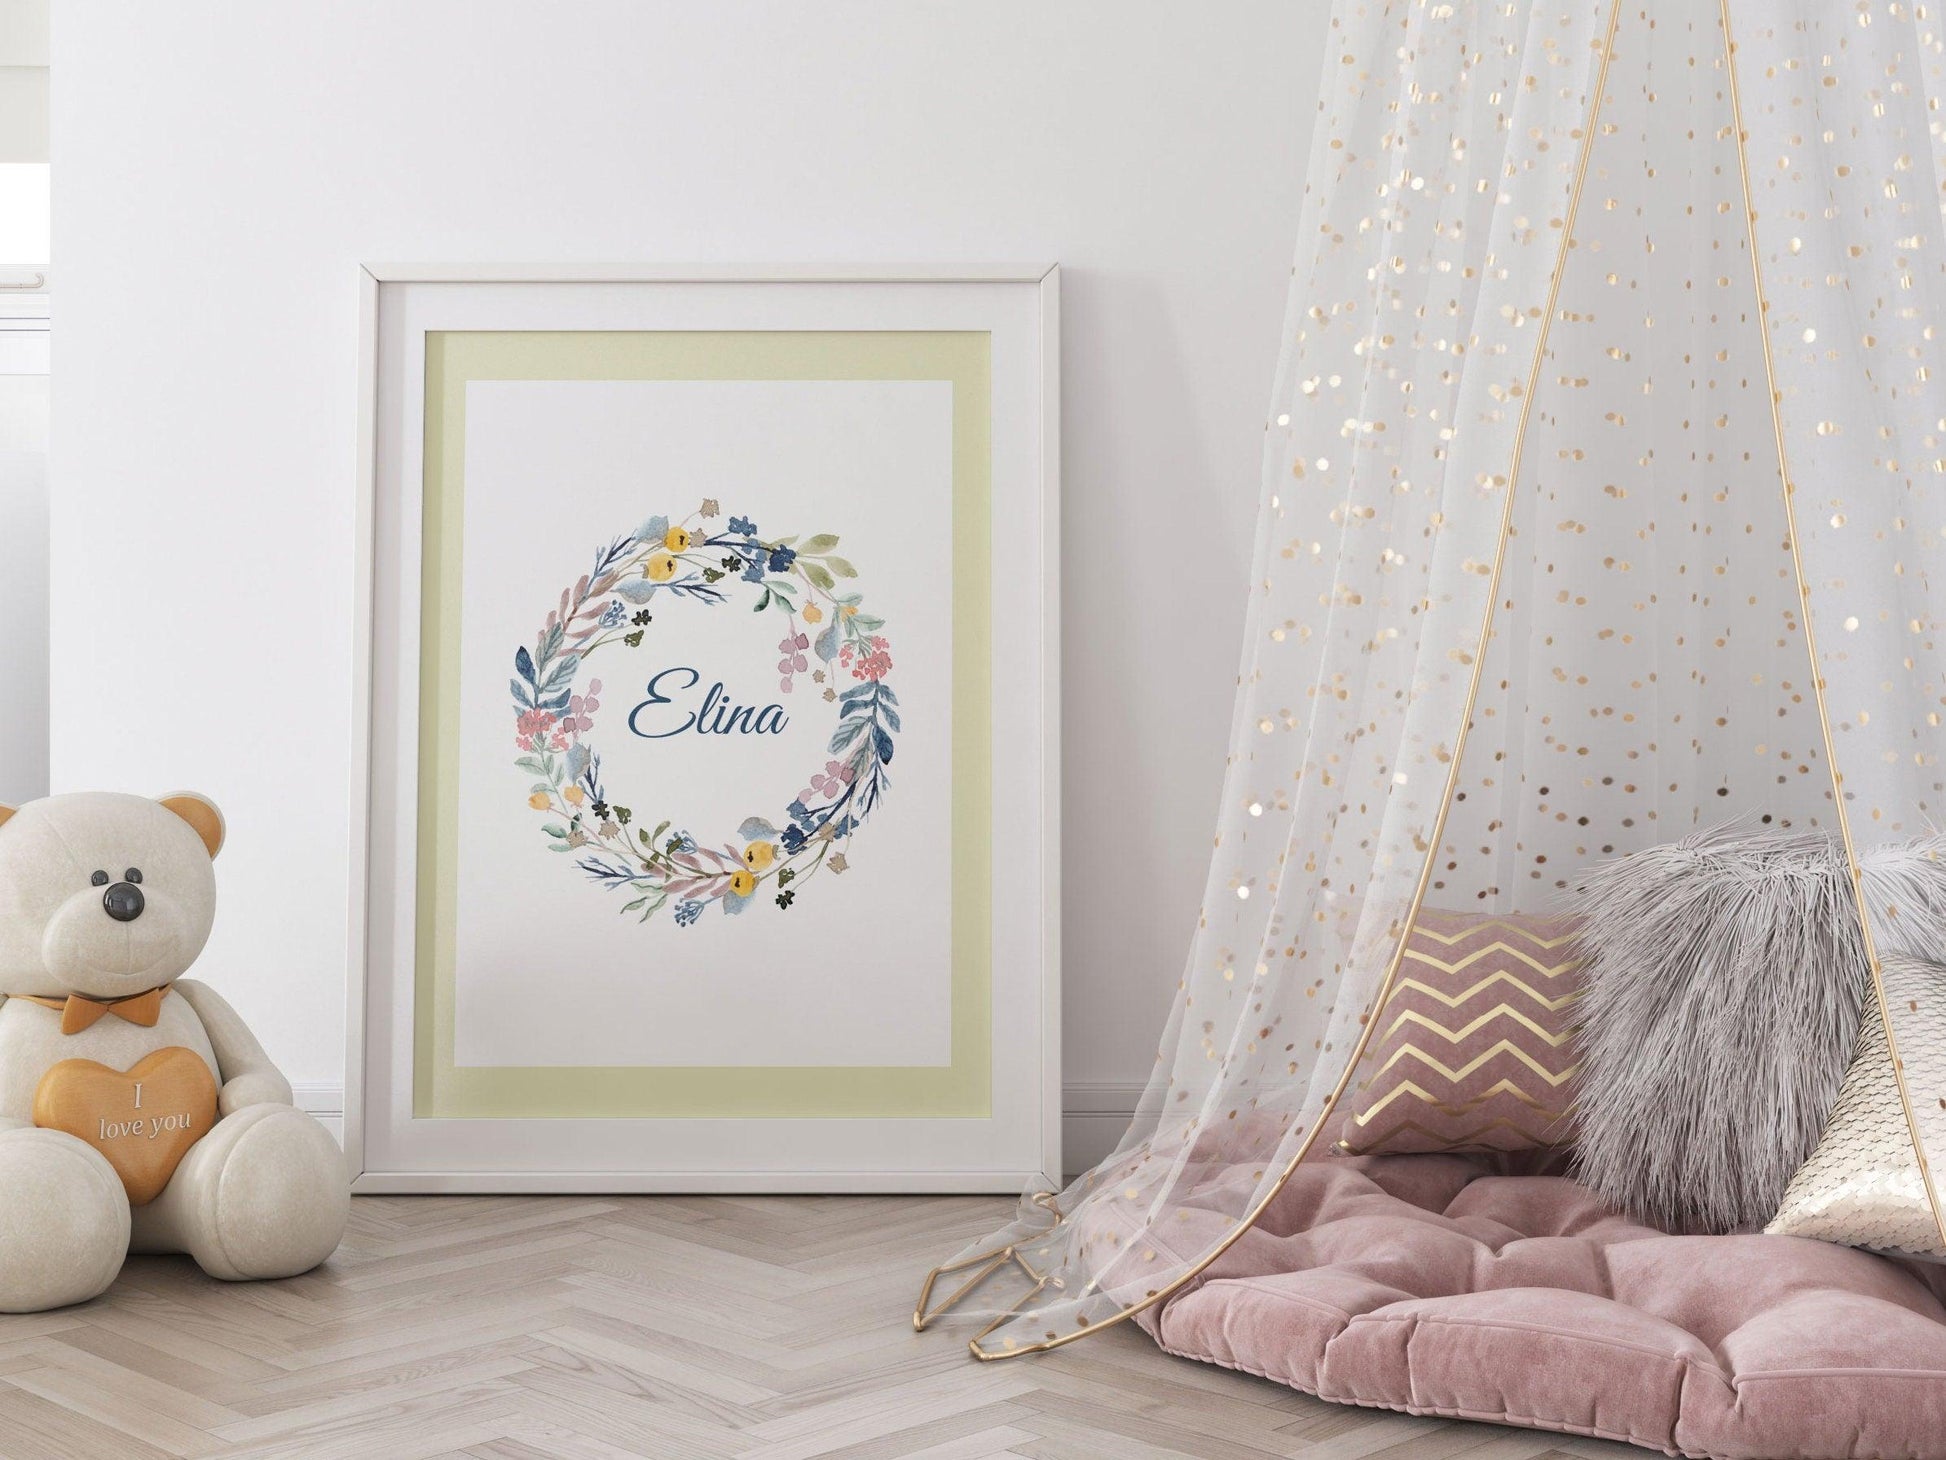 Affiche prénom personnalisable fleurie couronne - naissance anniversaire - fille bébé enfant - décoration poster mural - chambre salon - Imagine.affiche